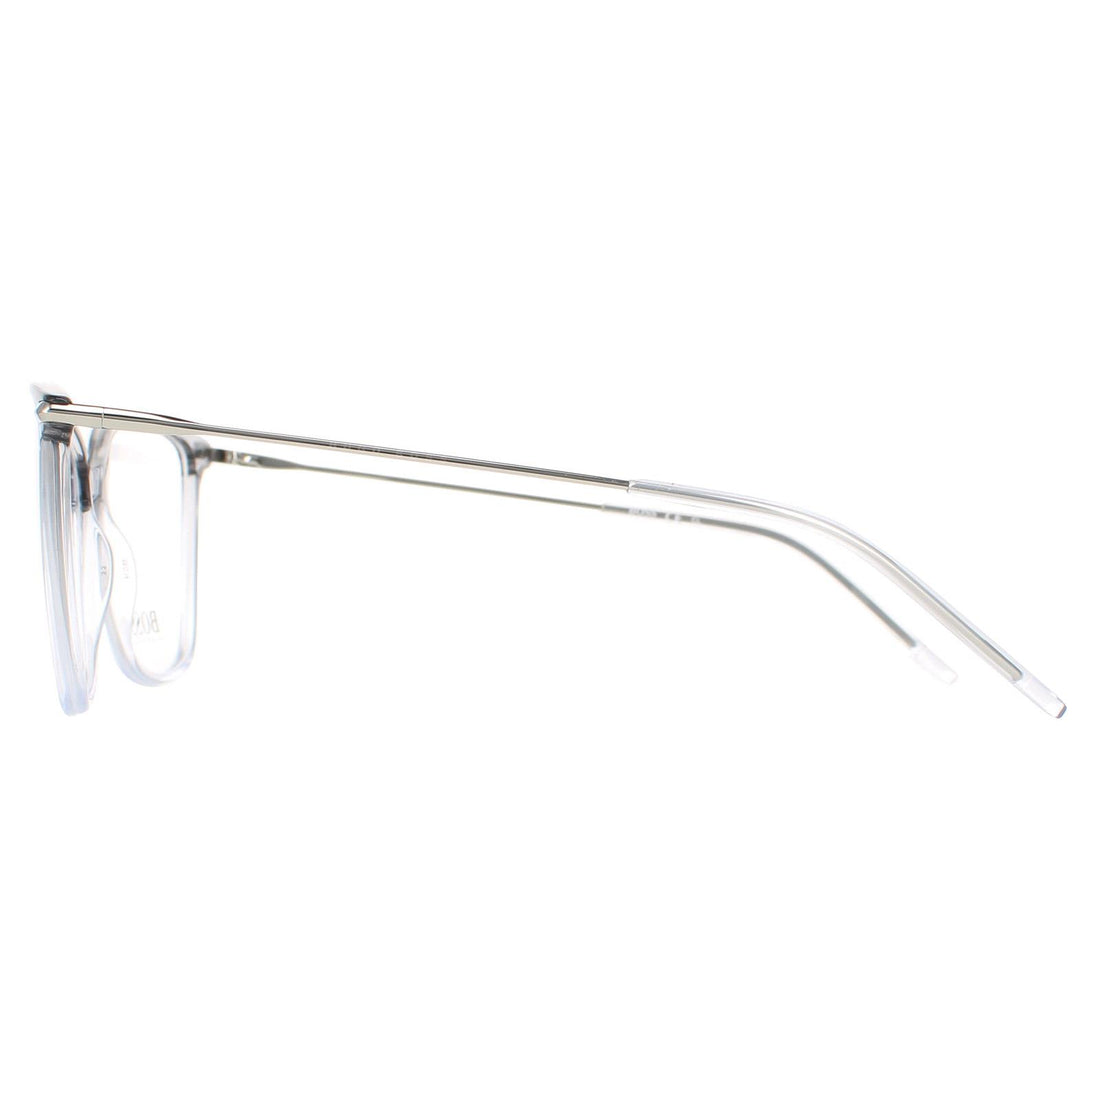 Hugo Boss Glasses Frames BOSS 1330 FS2 Crystal Grey Gradient Women